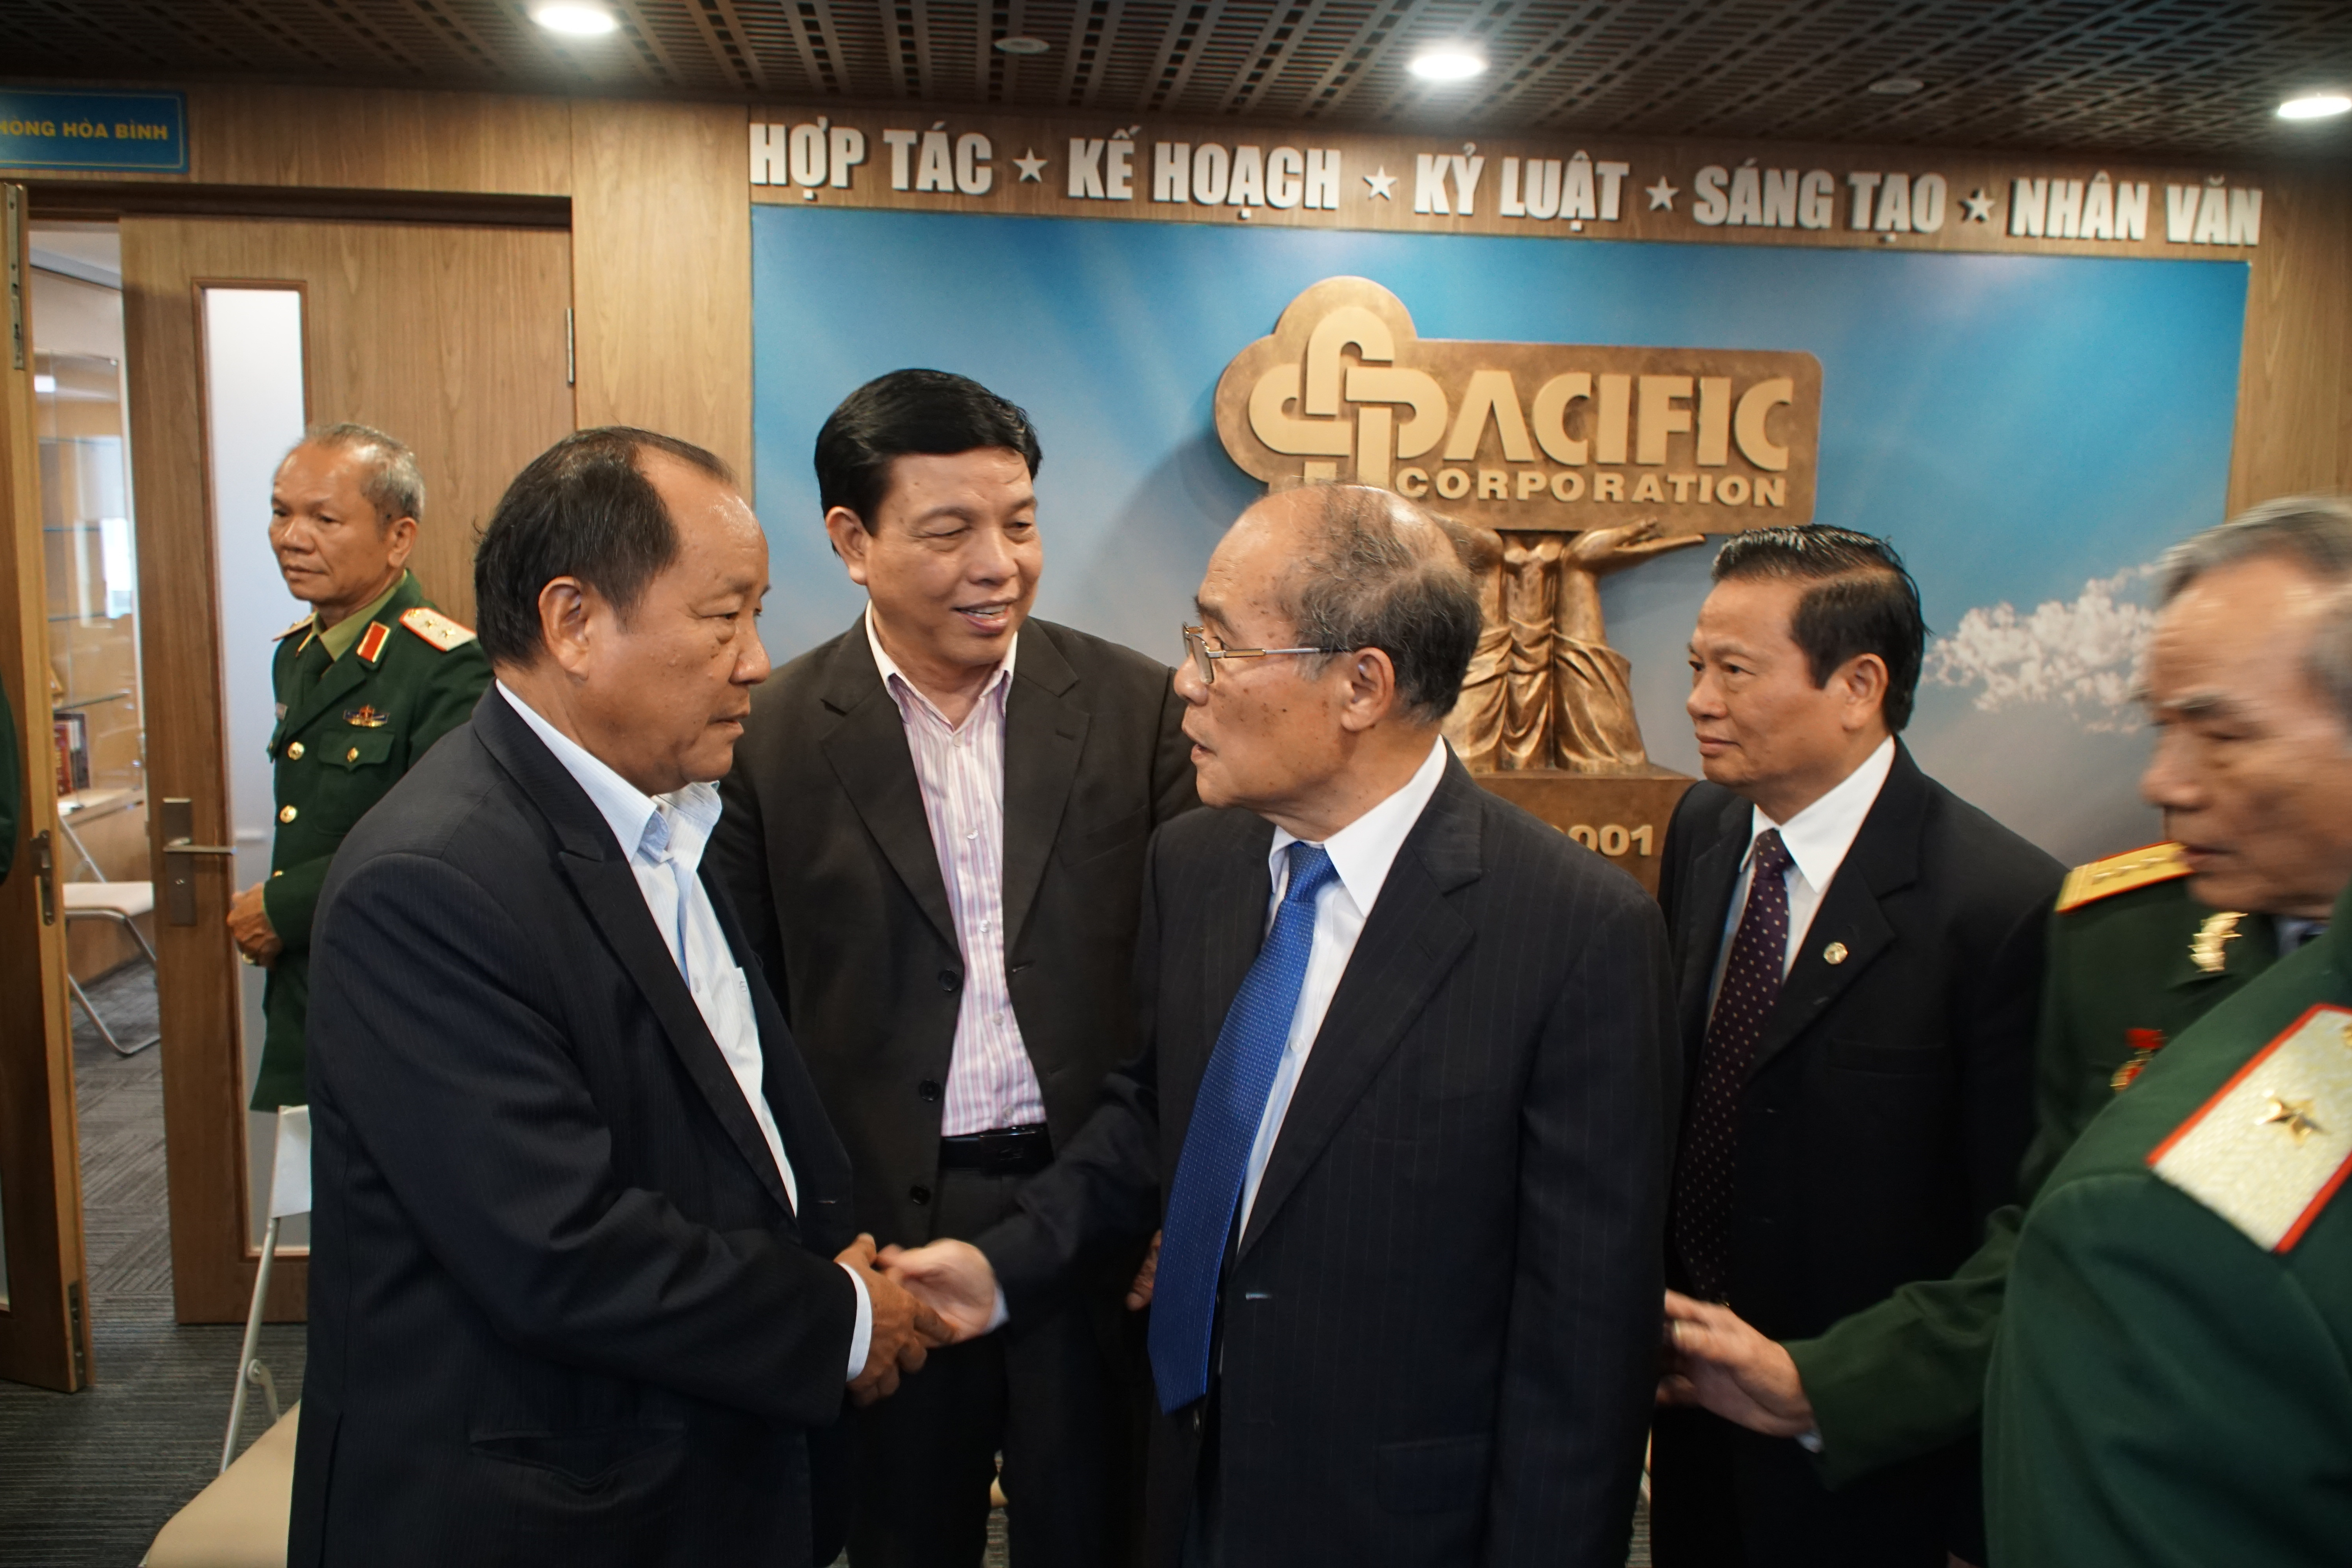 Nguyên Chủ tịch Quốc hội Nguyễn Sinh Hùng trò chuyện với các đại biểu về dự buổi gặp mặt. Ảnh: Nguyễn Công Khang 